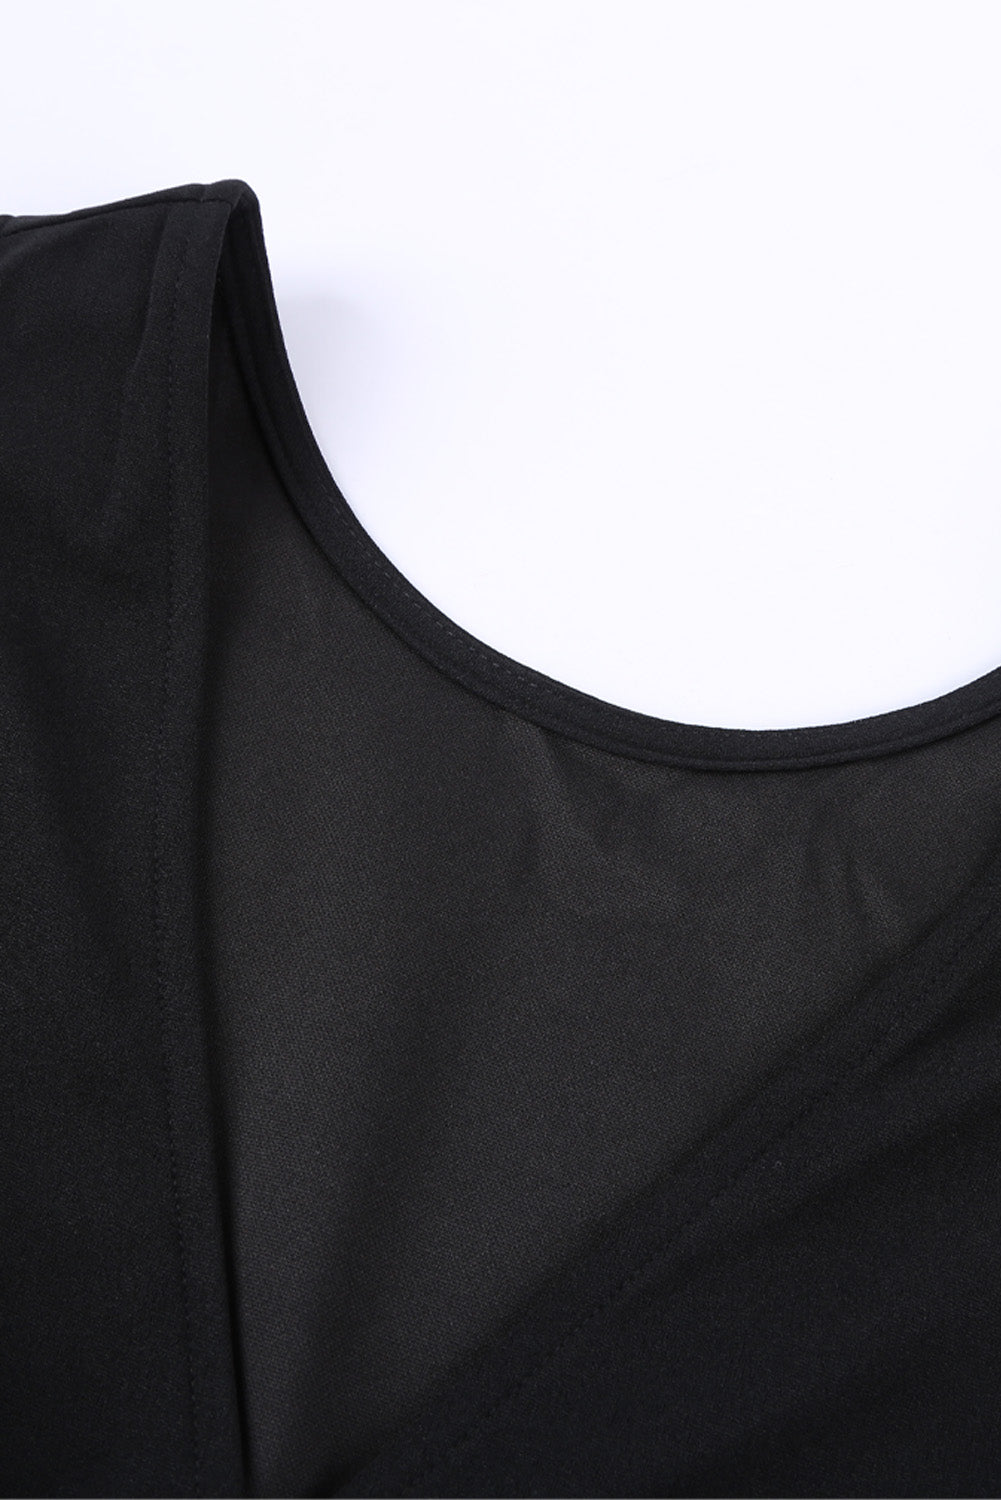 Black Deep V-neck Sleeveless Solid Jumpsuit Jumpsuits & Rompers JT's Designer Fashion